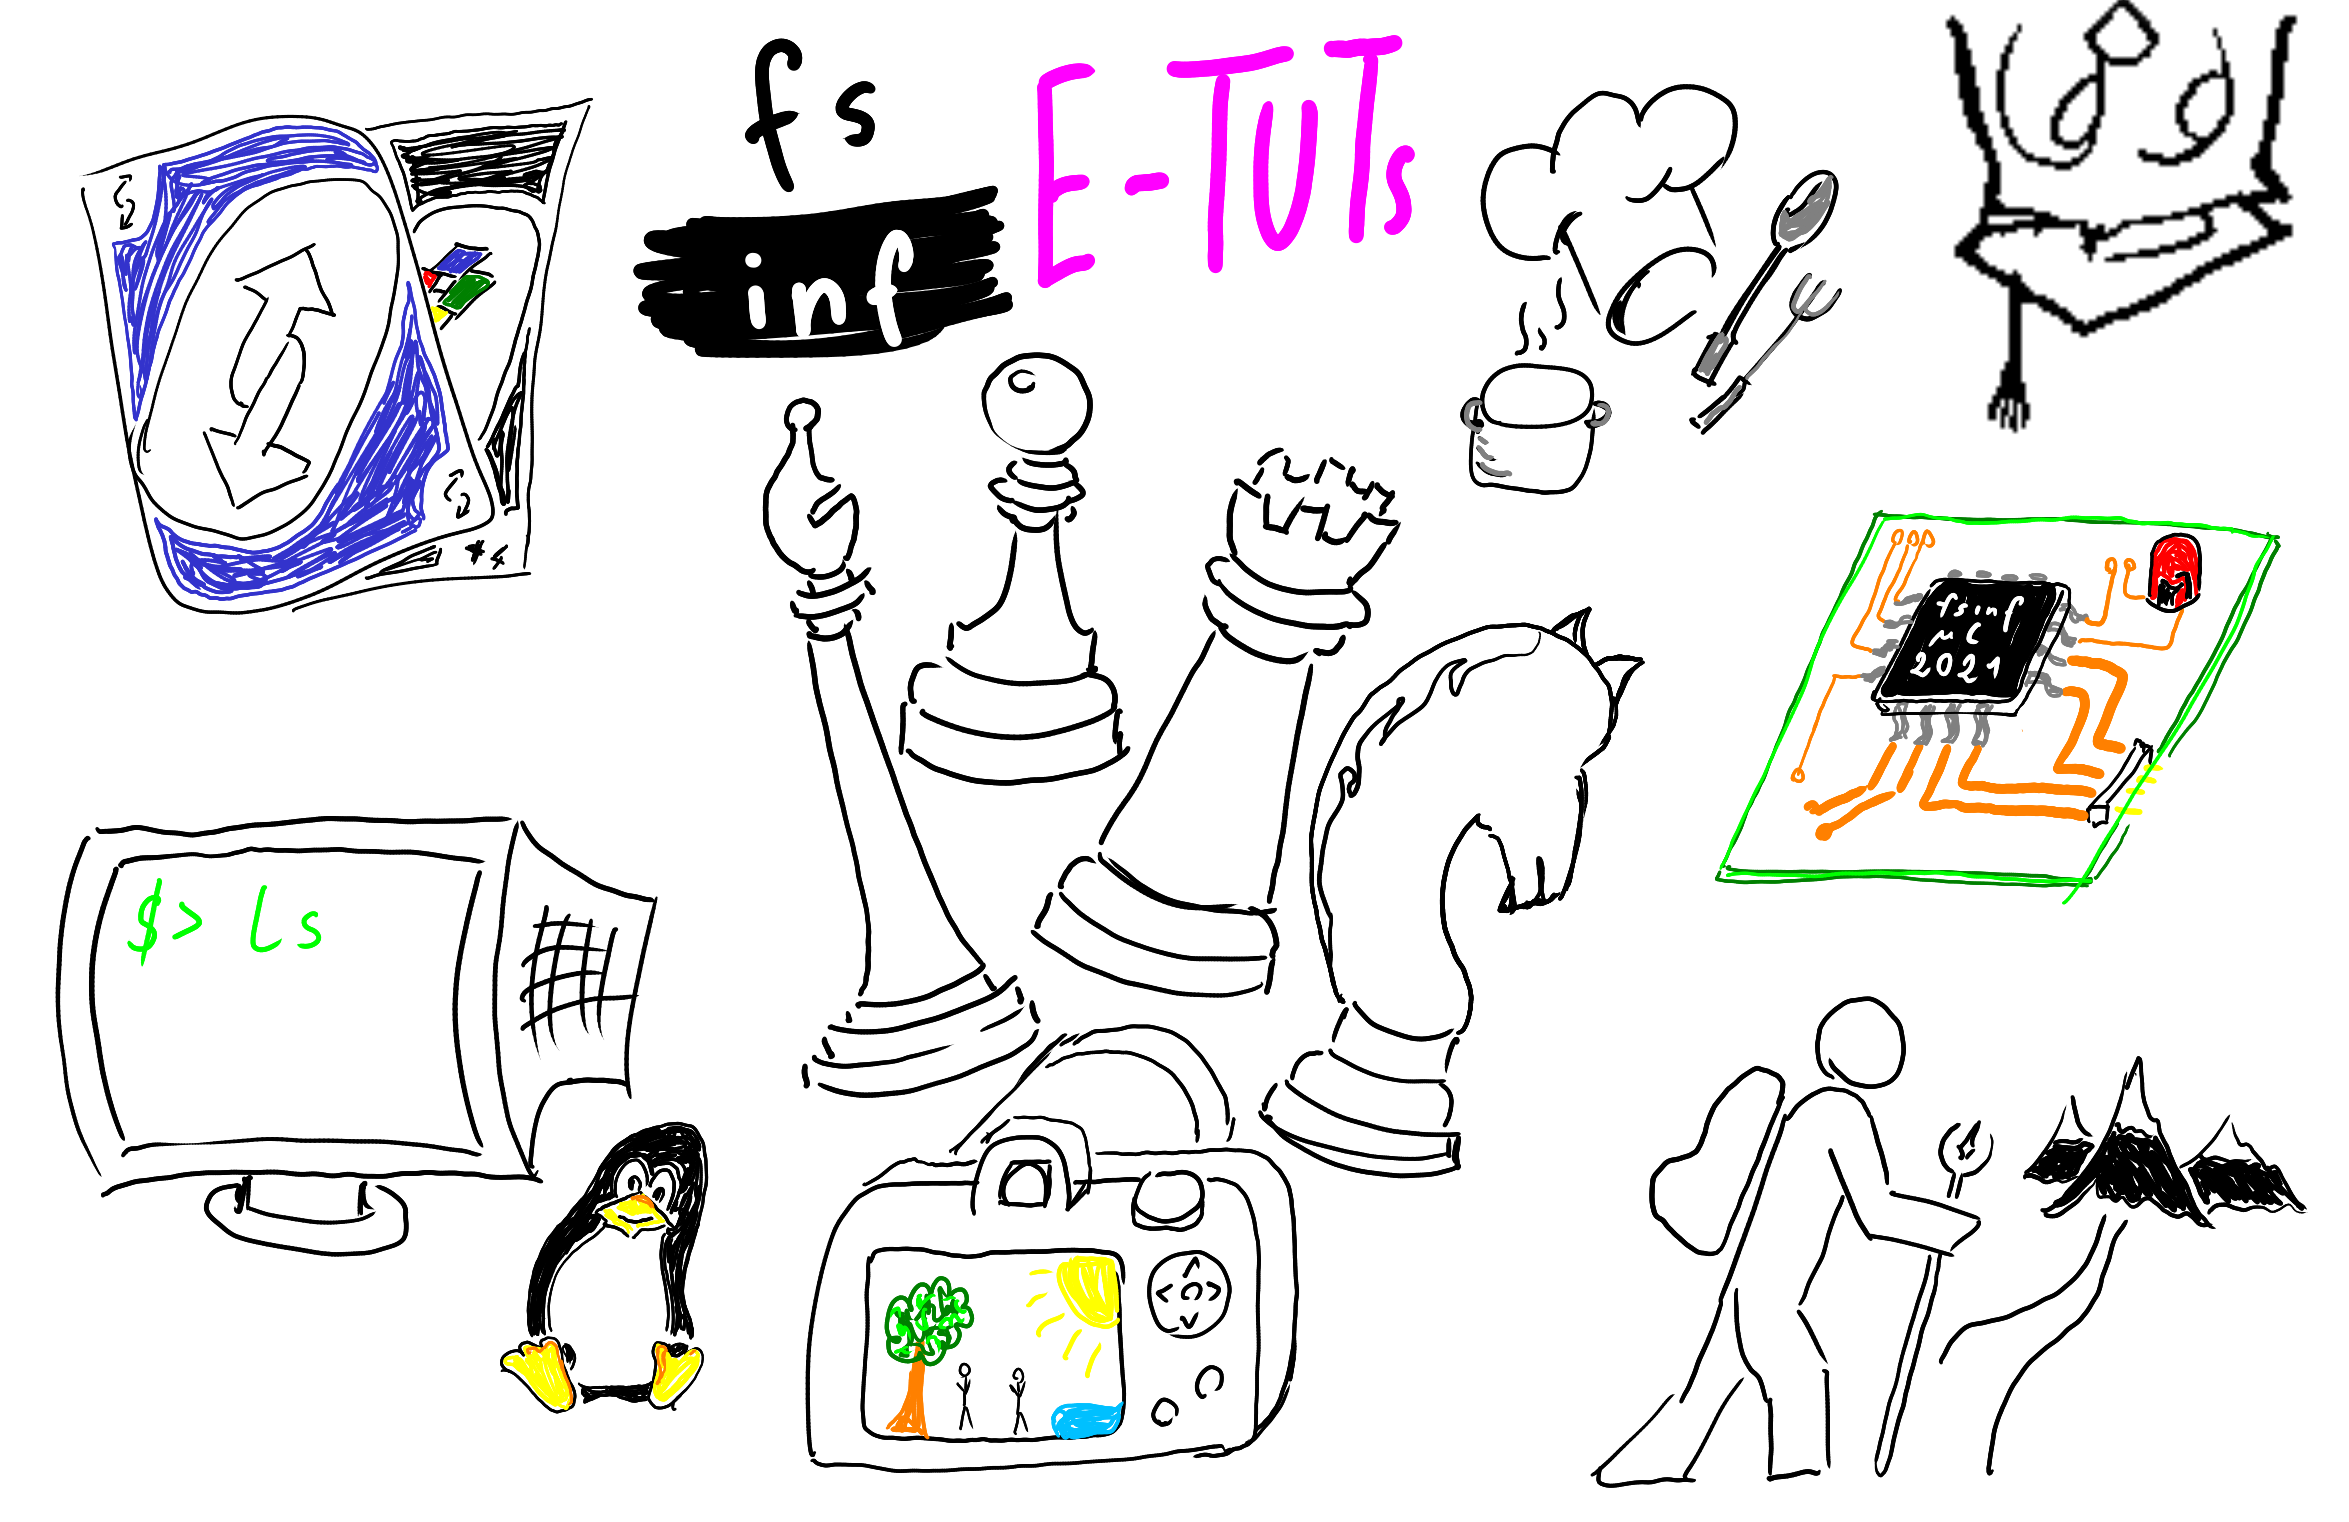 Verschiedene Symbole Grafiken zeigen unterschiedliche Tätigkeiten die im Rahmen der FSINF E-Tuts gemacht werden können, darunter Schach, Fotografie, Kochen, Wandern & Command-Line Tools.